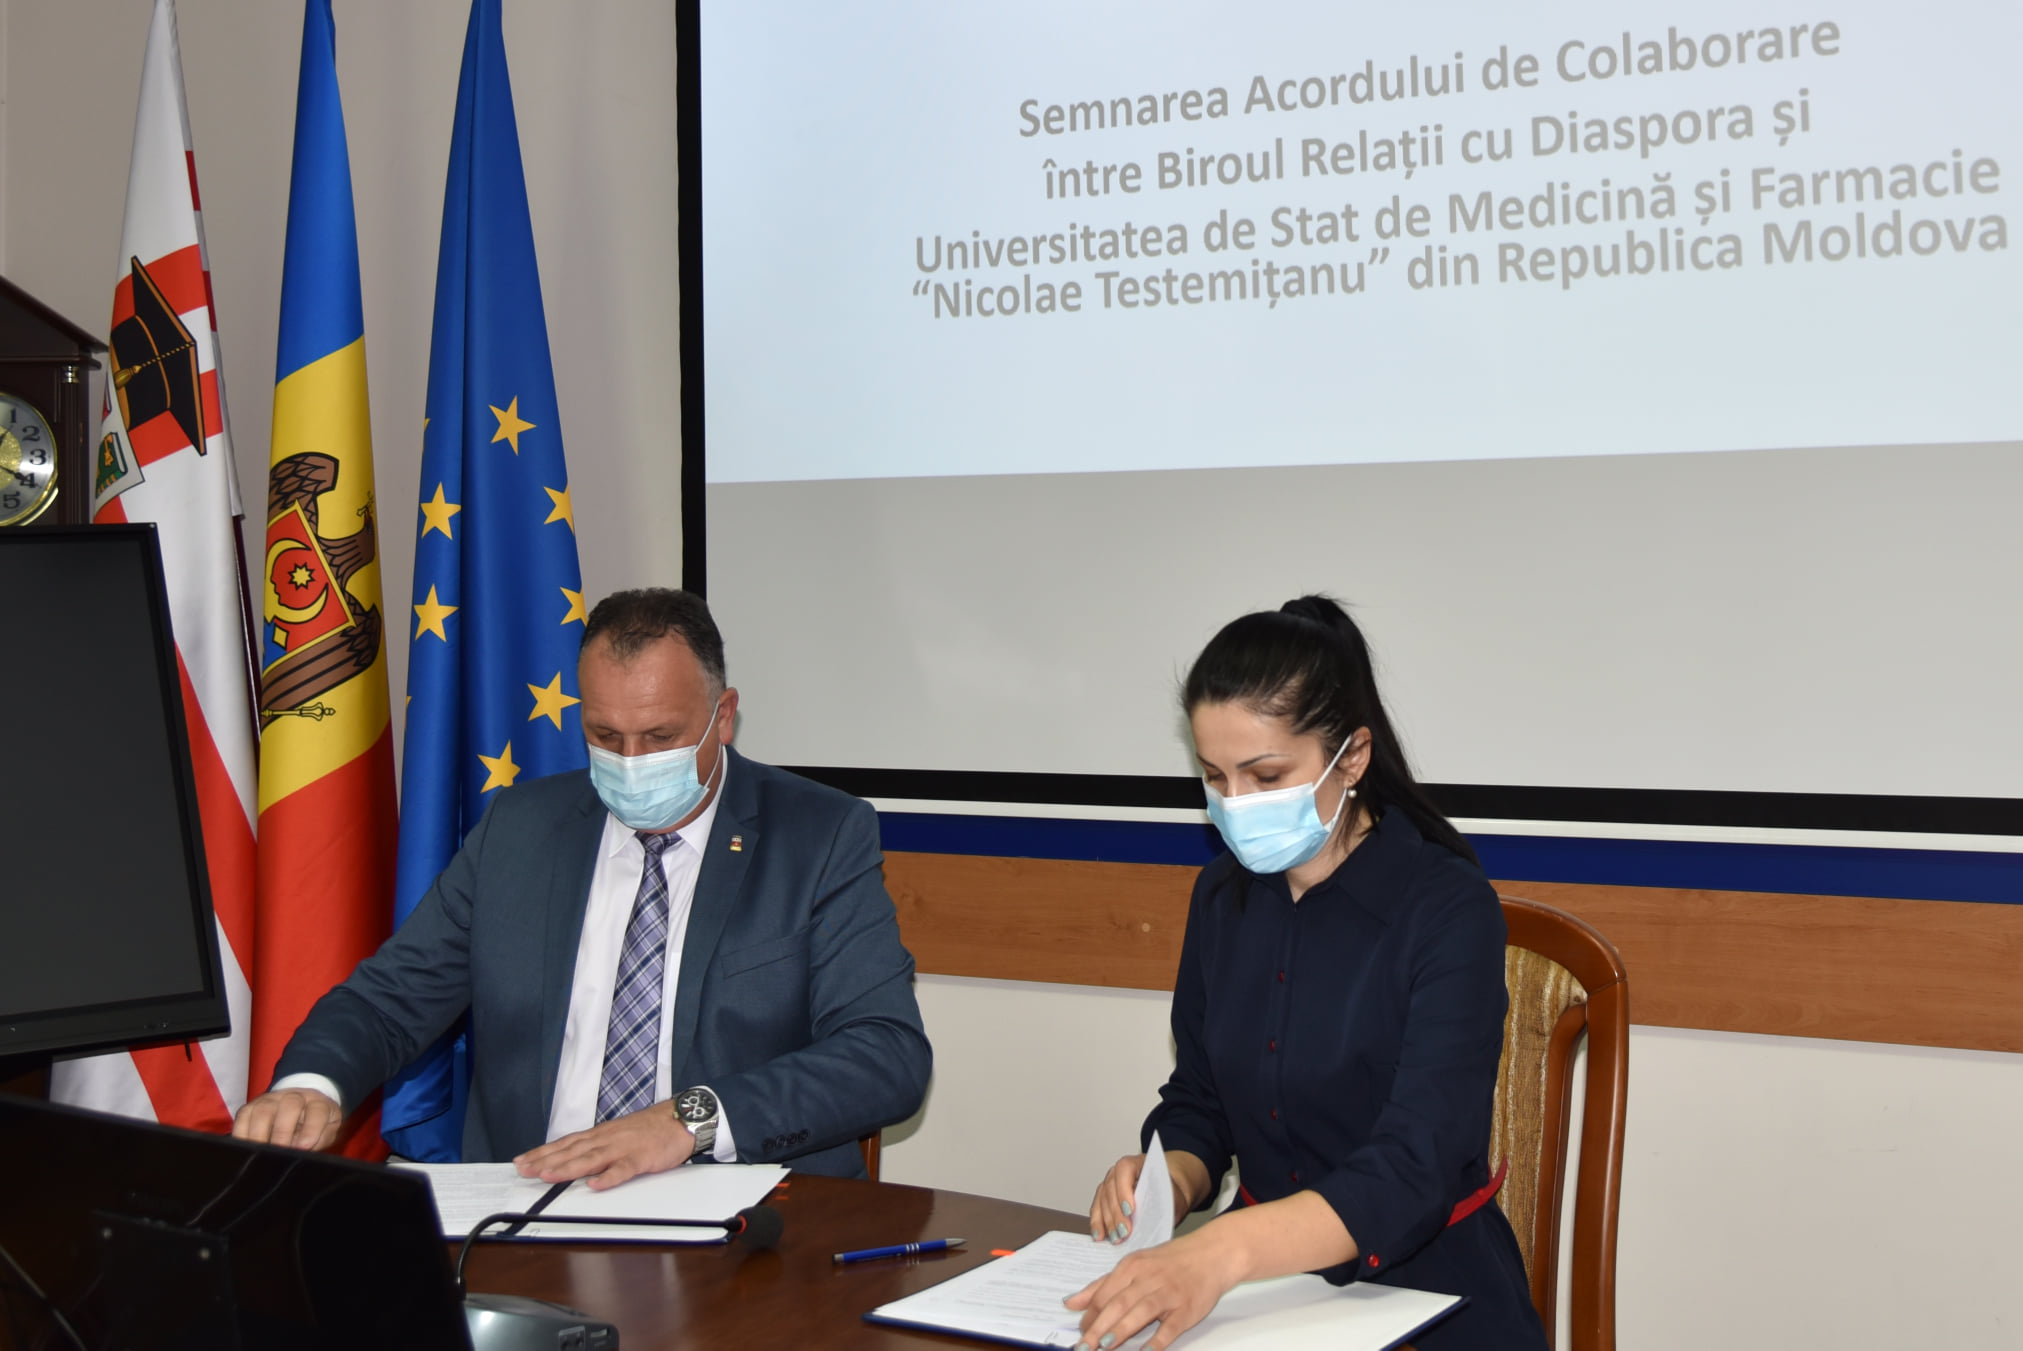 Acord de colaborare între Biroul relații cu diaspora și Universitatea de Stat de Medicină și Farmacie „Nicolae Testemițanu”